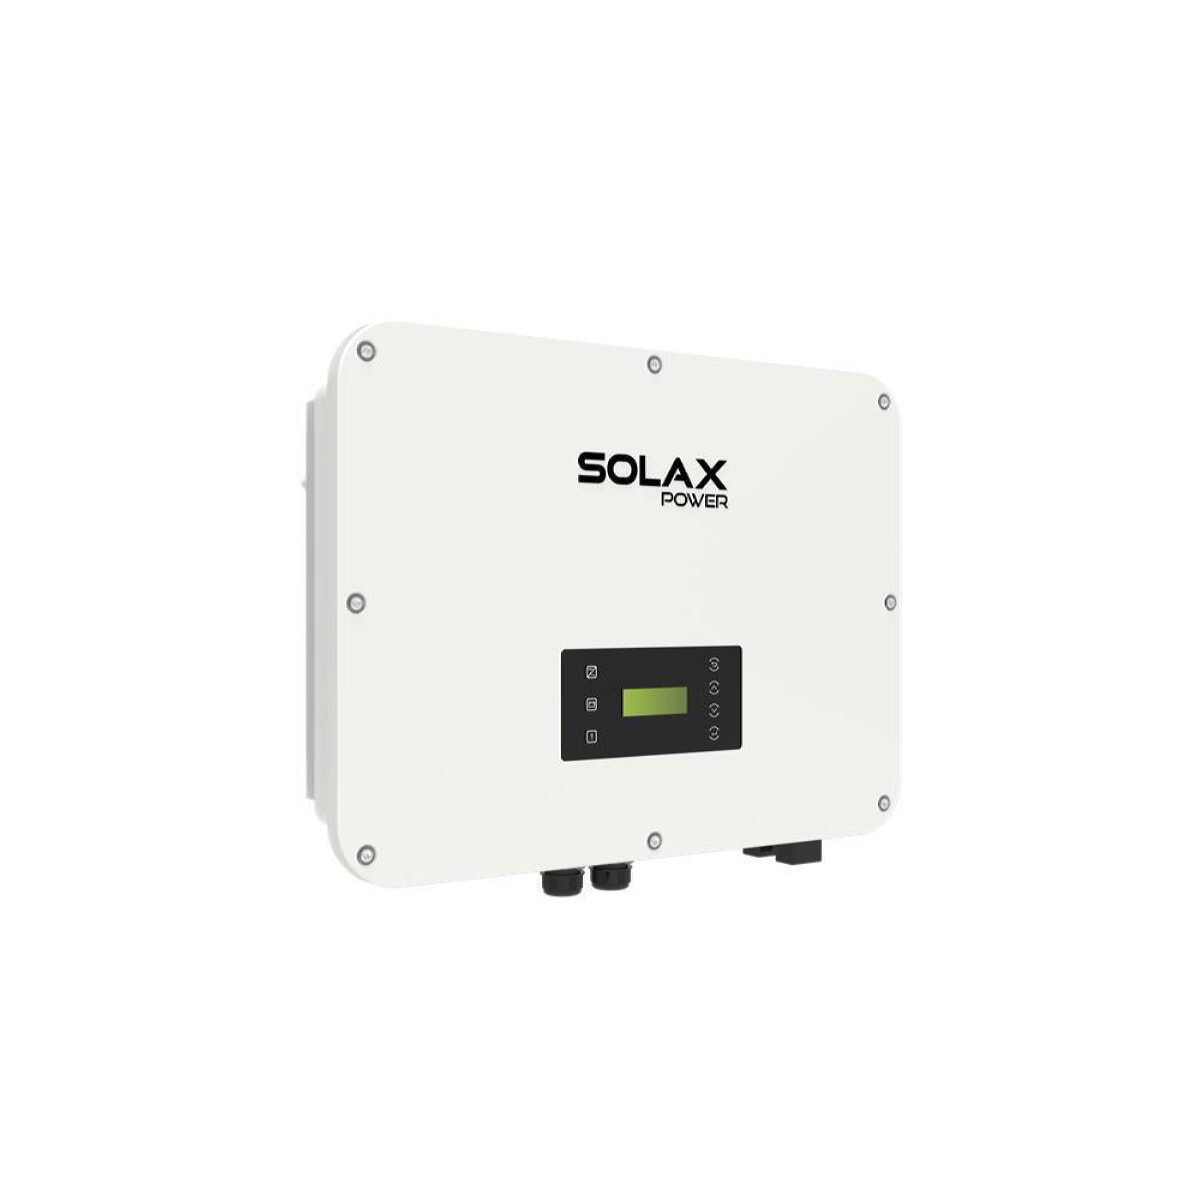 SolaX X3 Ultra 30K three-phase hybrid inverter